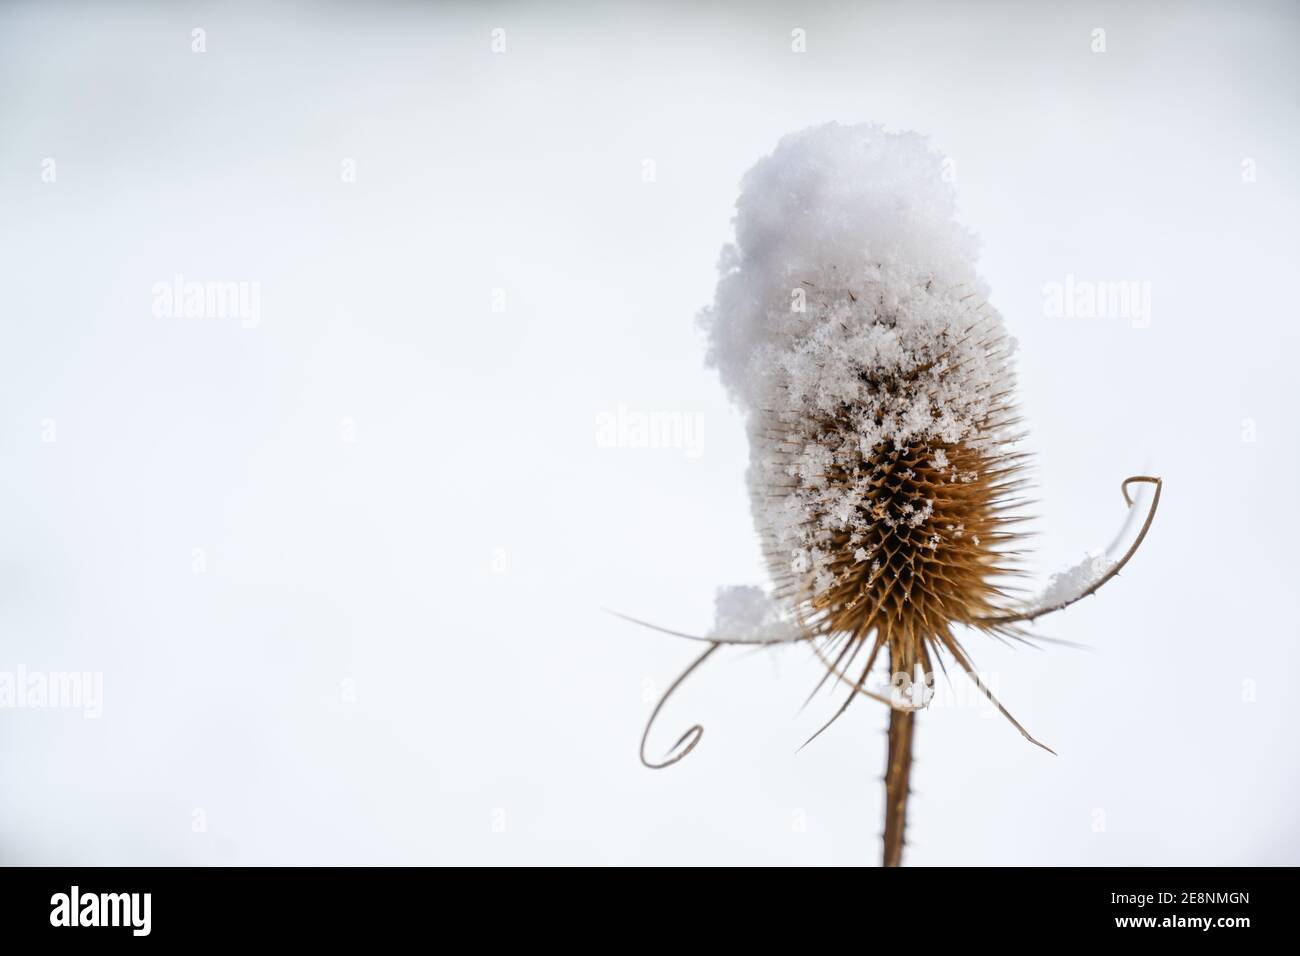 Trockener Samenständer des wilden Teelns (Dipsacus fullonum) mit Schneehaube im Winter, Kopierraum, ausgewählter Fokus, enge Schärfentiefe Stockfoto